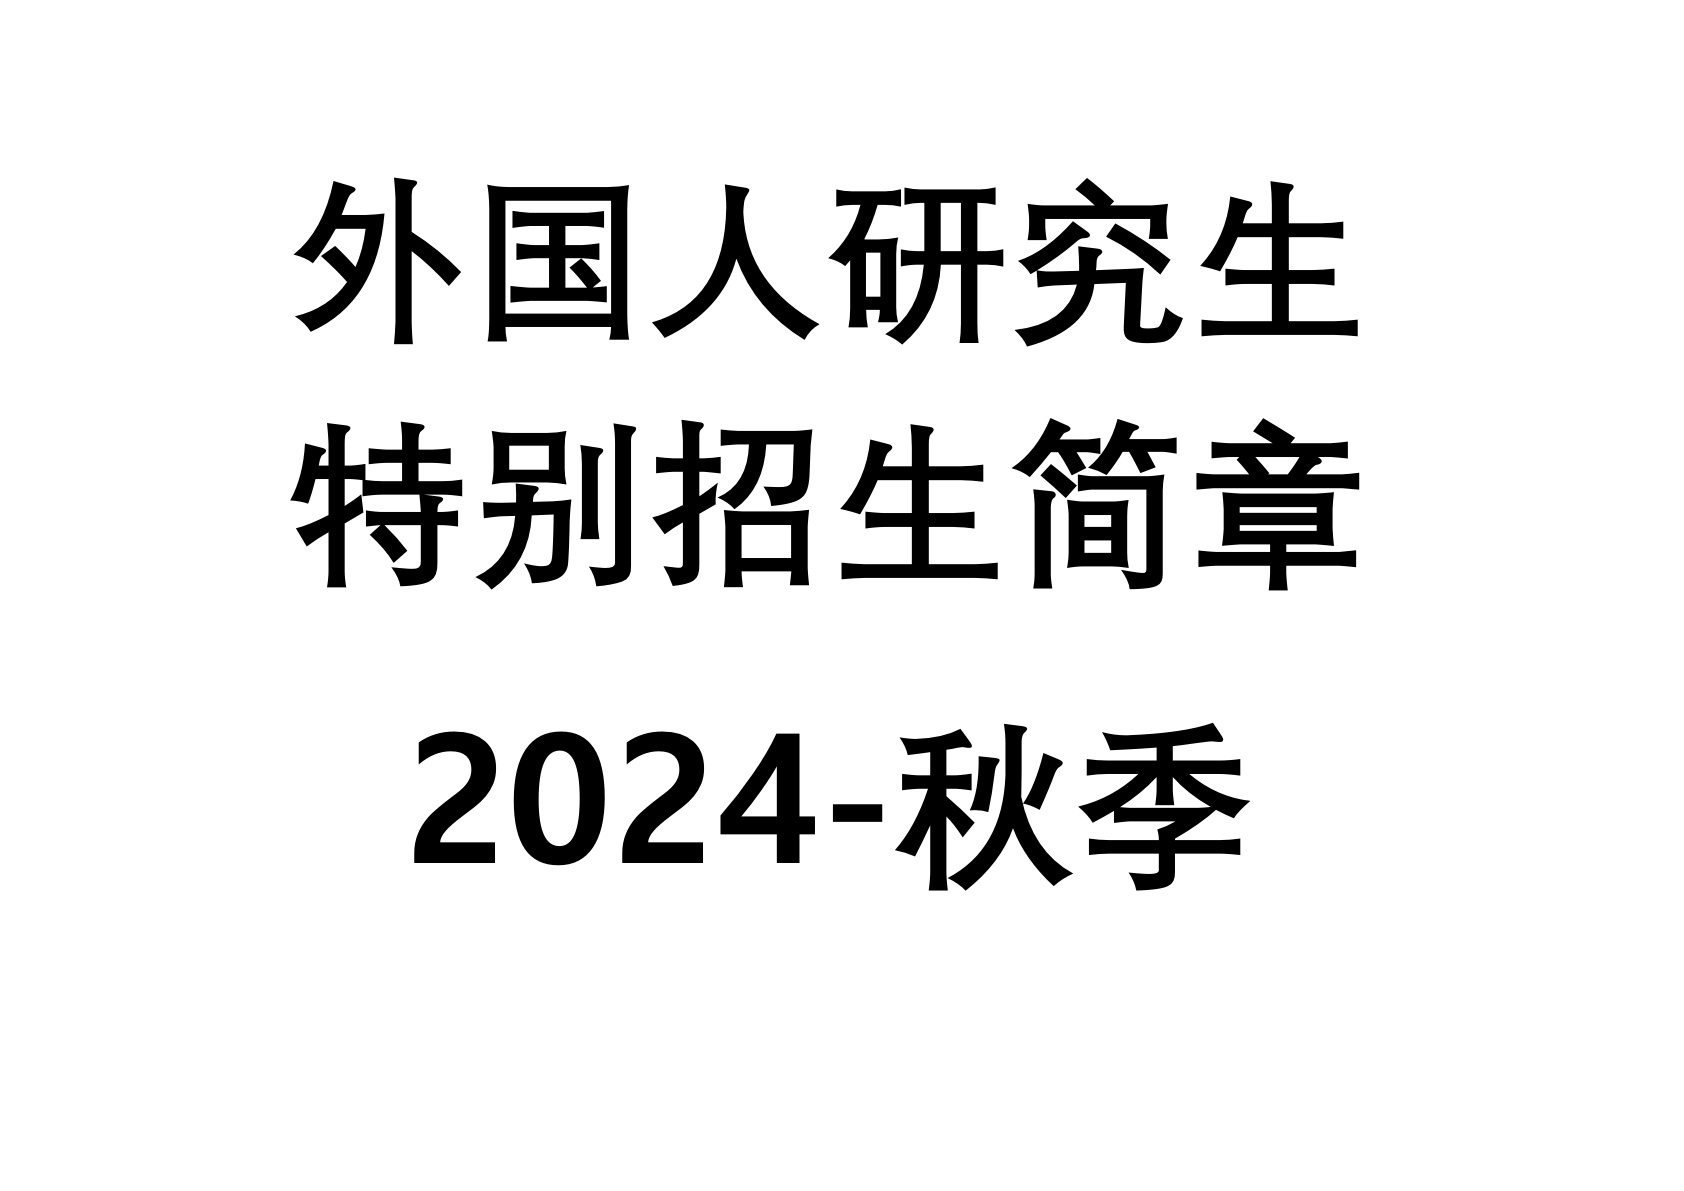 2024-秋季 外国人研究生特别招生简章  대표이미지